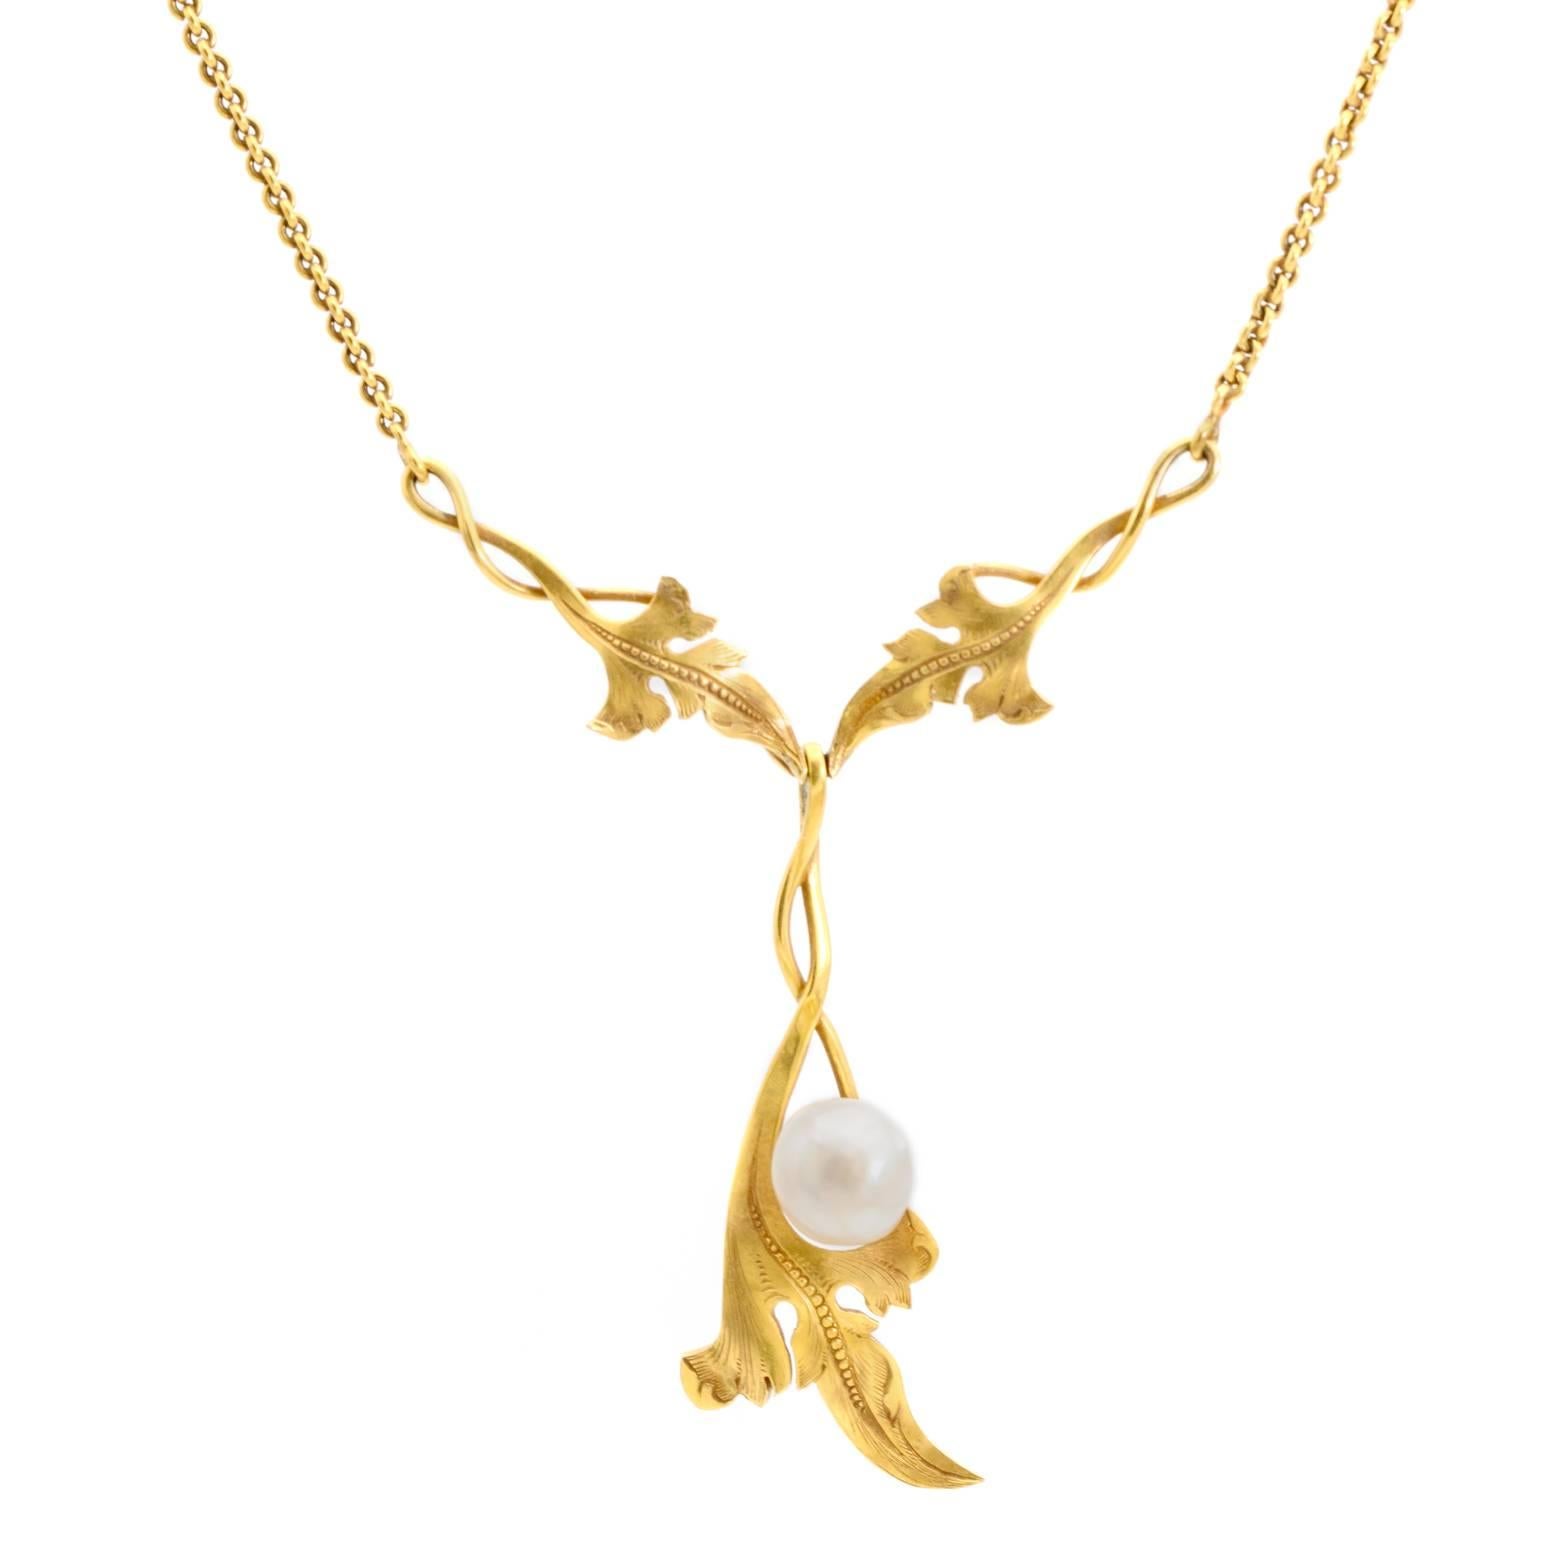 Antique Gold Necklace Art Nouveau Style Natural Pearl